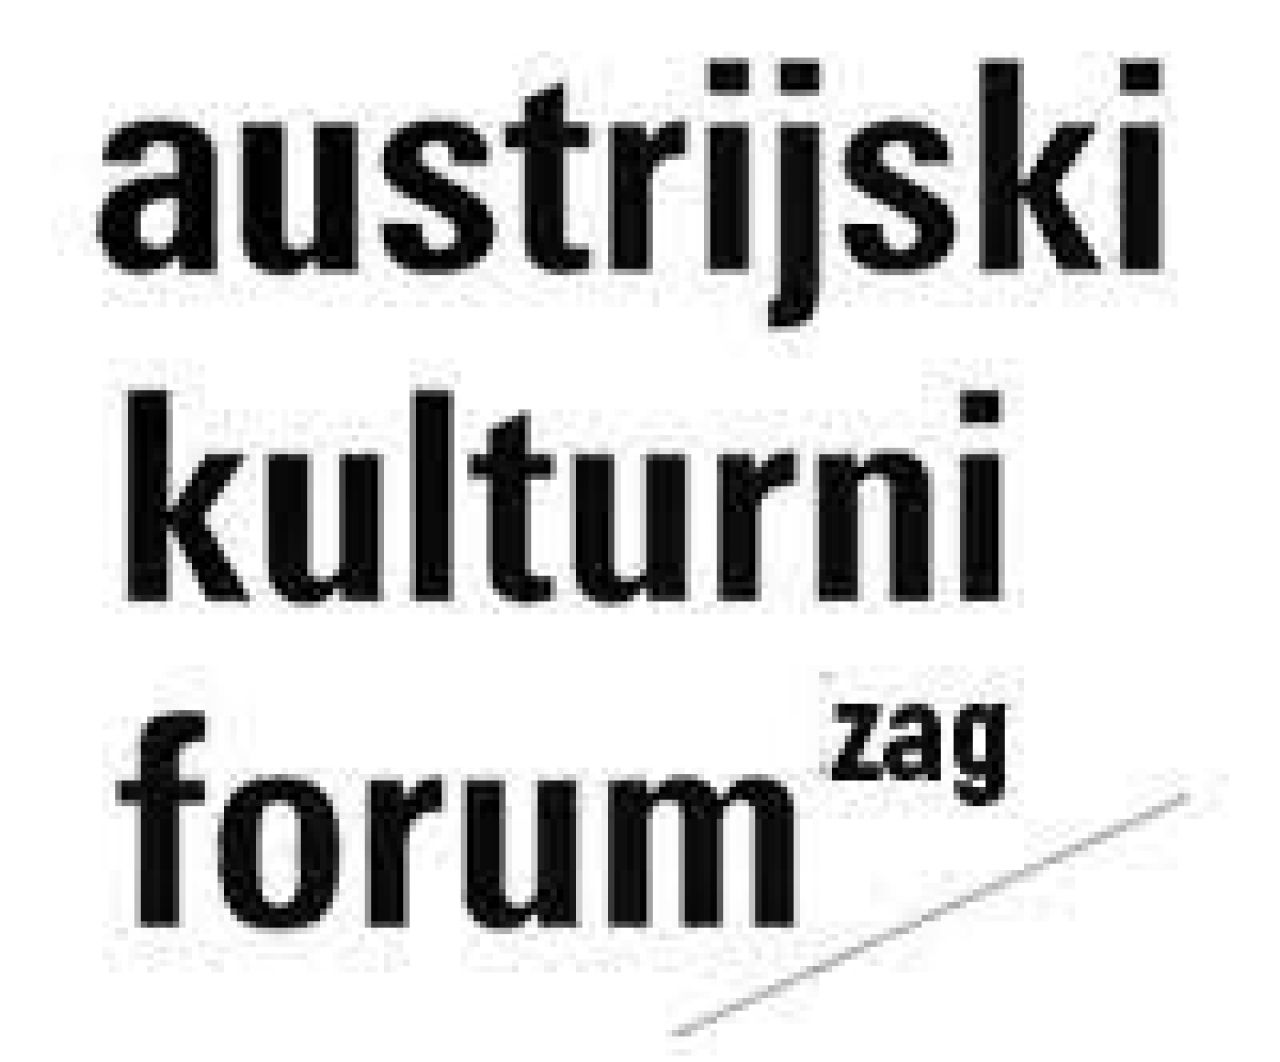 Austrijski kulturni forum